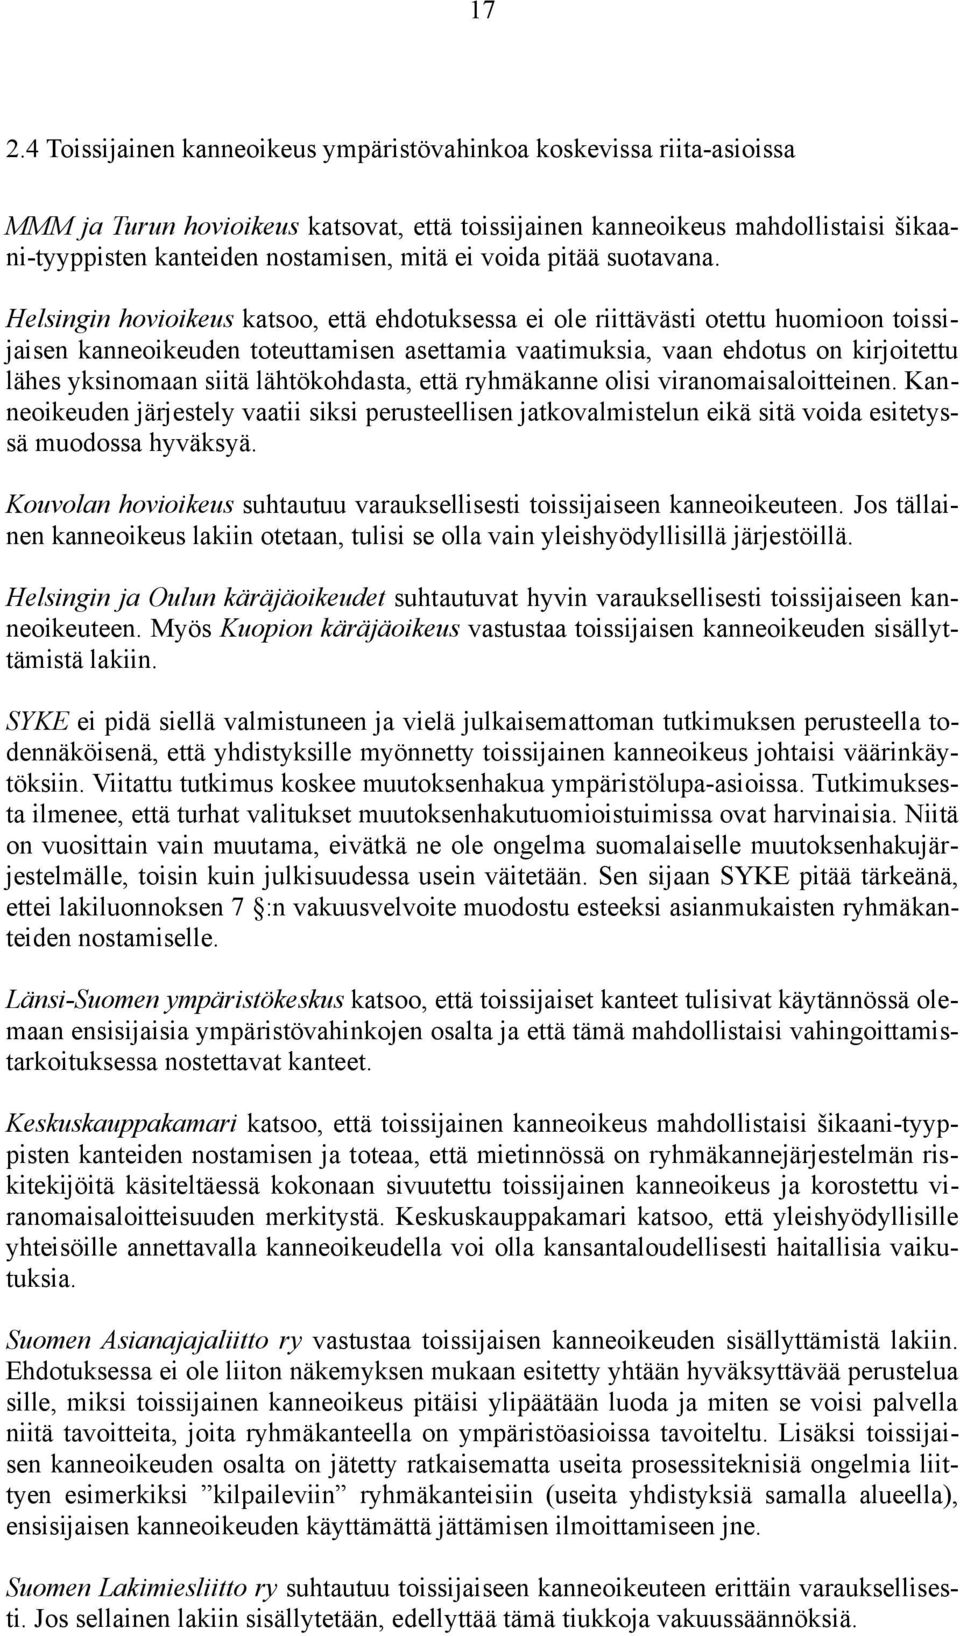 Helsingin hovioikeus katsoo, että ehdotuksessa ei ole riittävästi otettu huomioon toissijaisen kanneoikeuden toteuttamisen asettamia vaatimuksia, vaan ehdotus on kirjoitettu lähes yksinomaan siitä